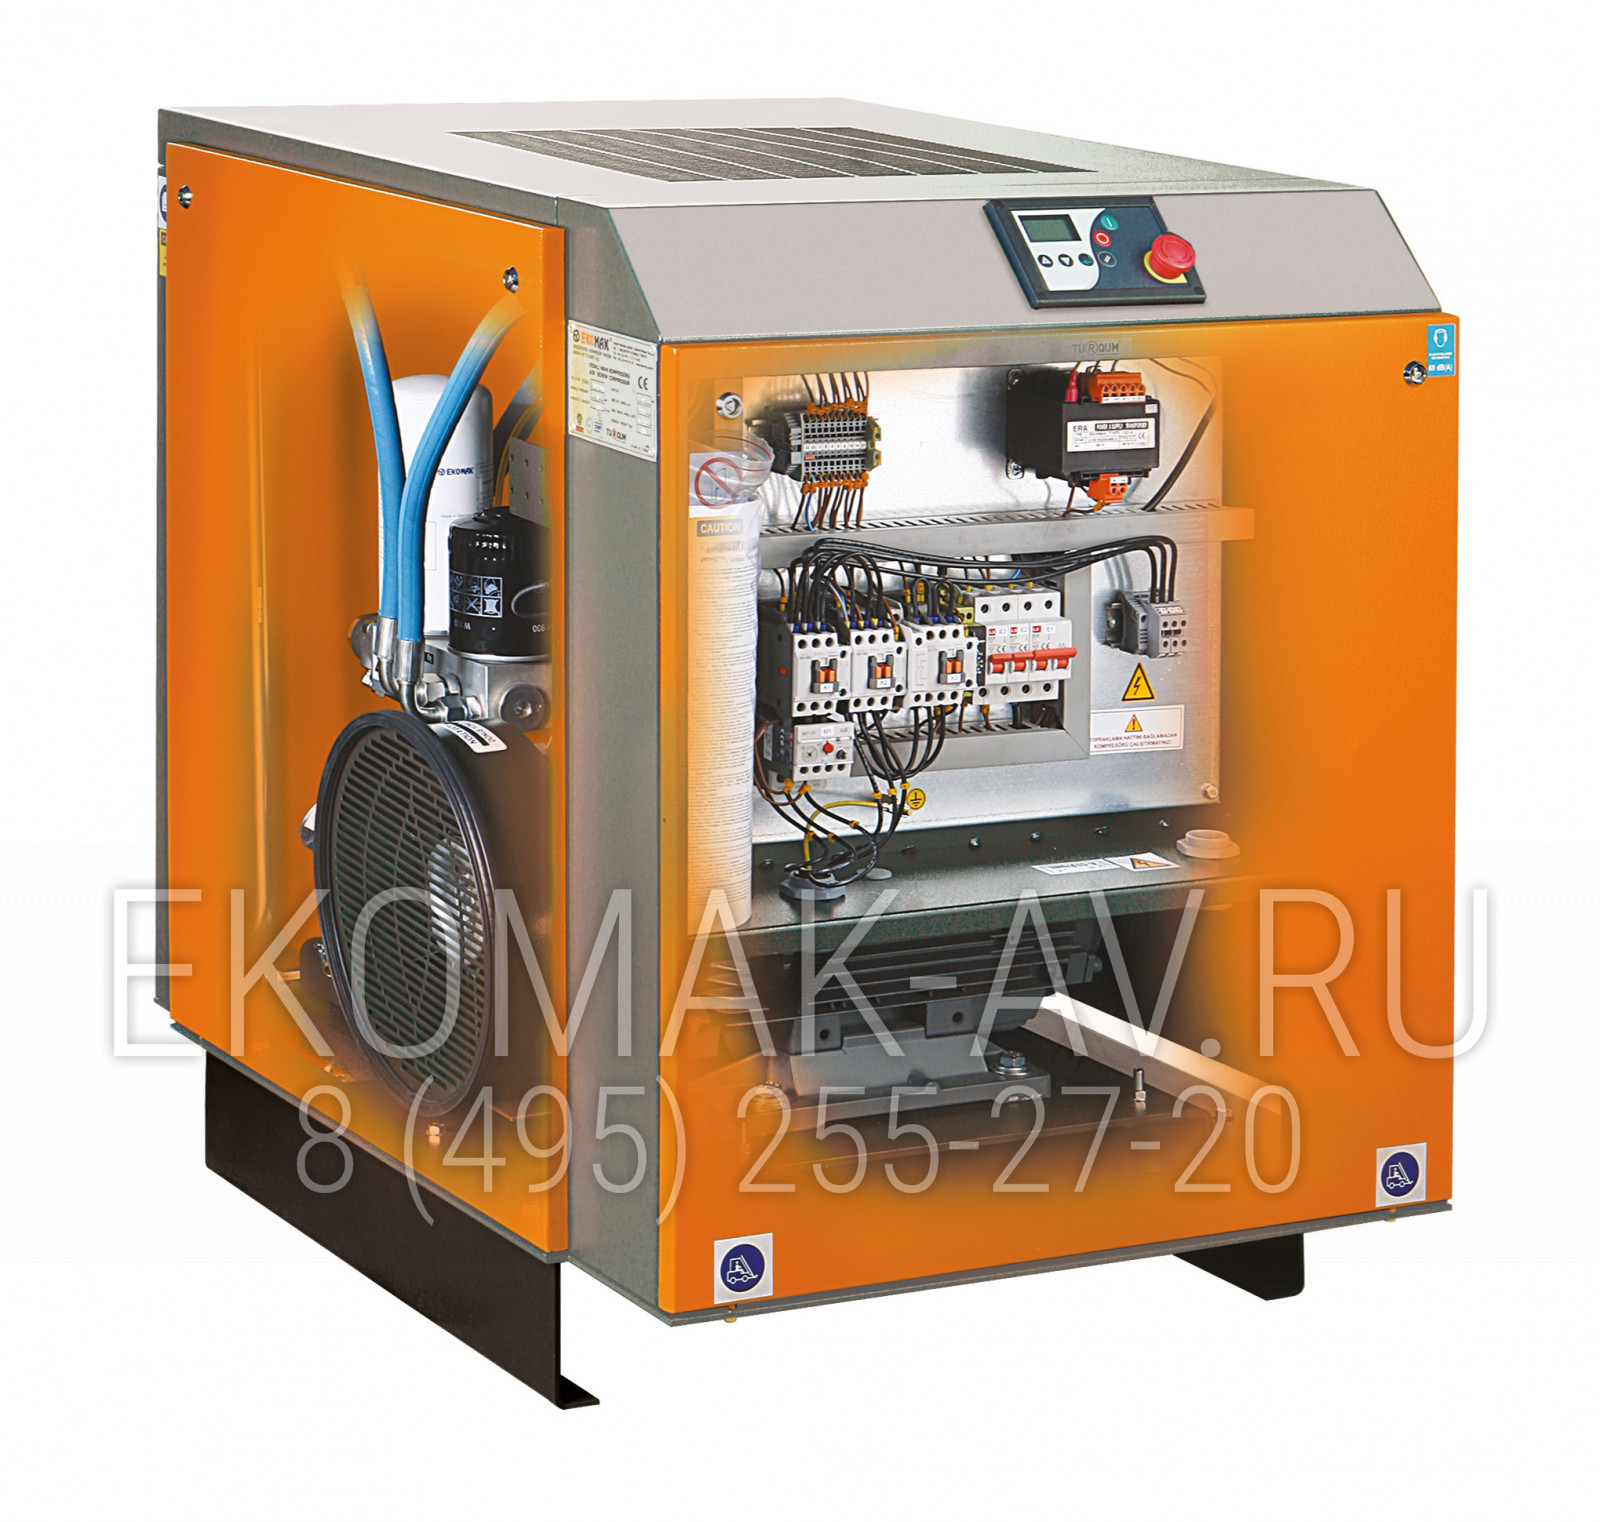 Винтовой компрессор Ekomak DMD 150 VST 13